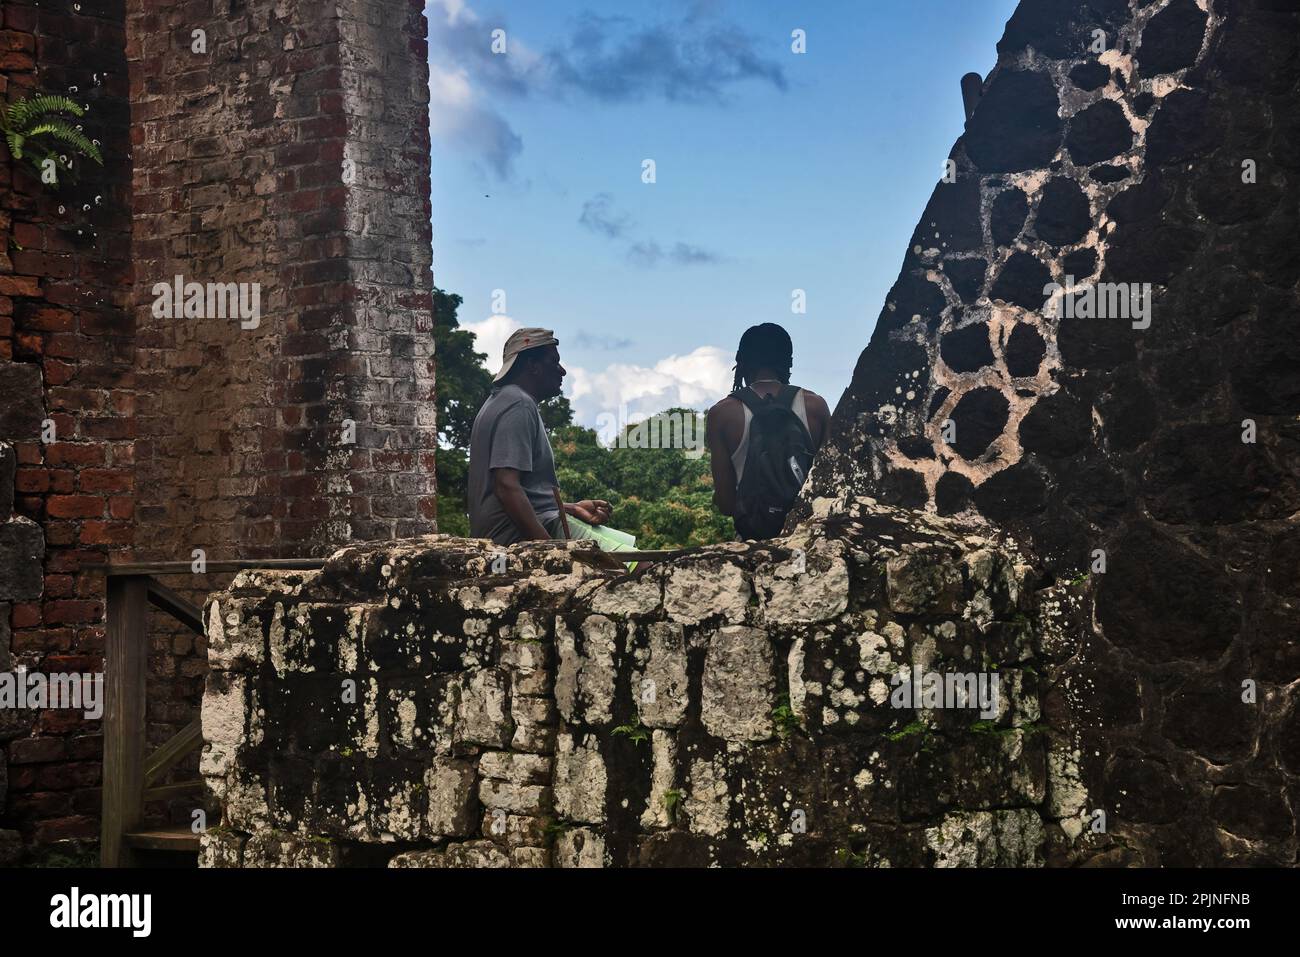 Ruines de la sugarfabrique le domaine de Wingfield, Romney Manor, St. Kitts, Caraïbes Banque D'Images